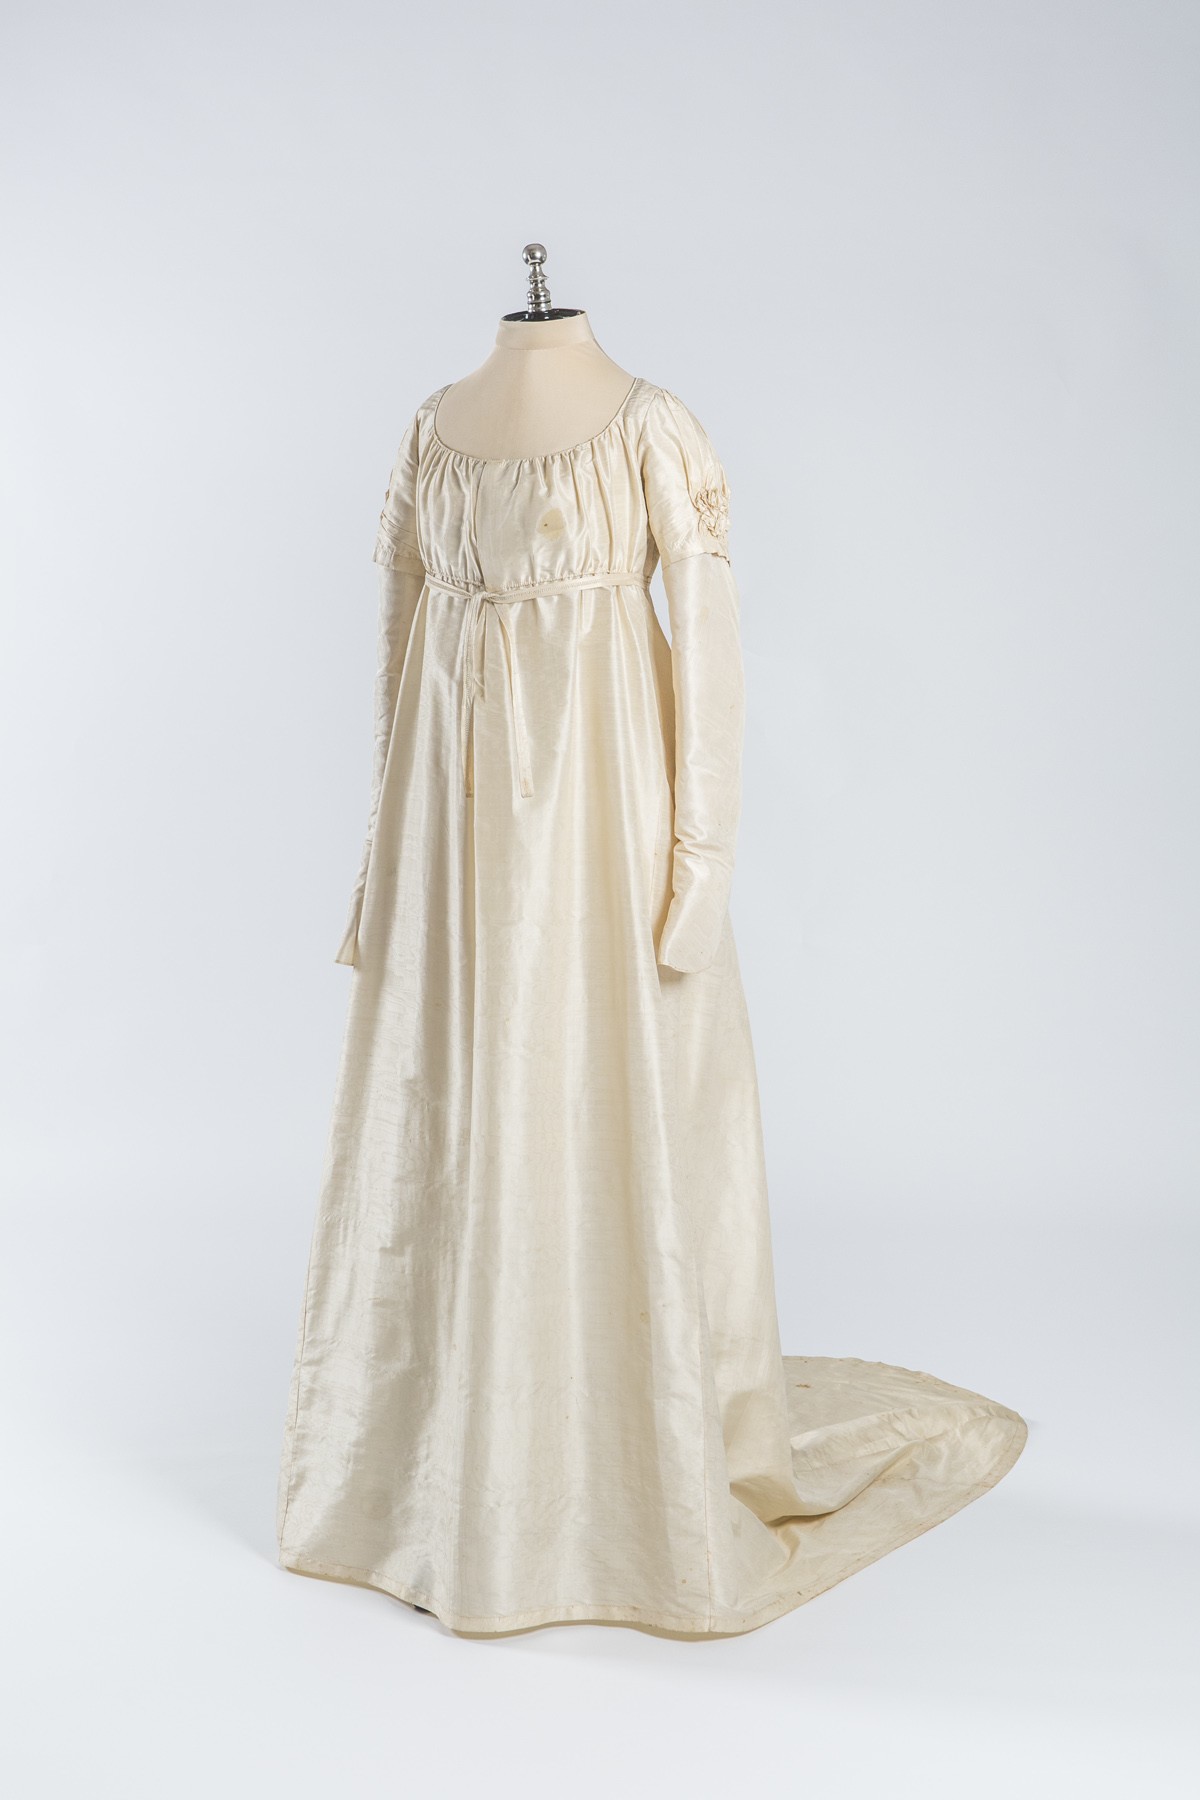 Hochzeitskleid von Josefine Jordan (Historisches Museum der Pfalz, Speyer CC BY)